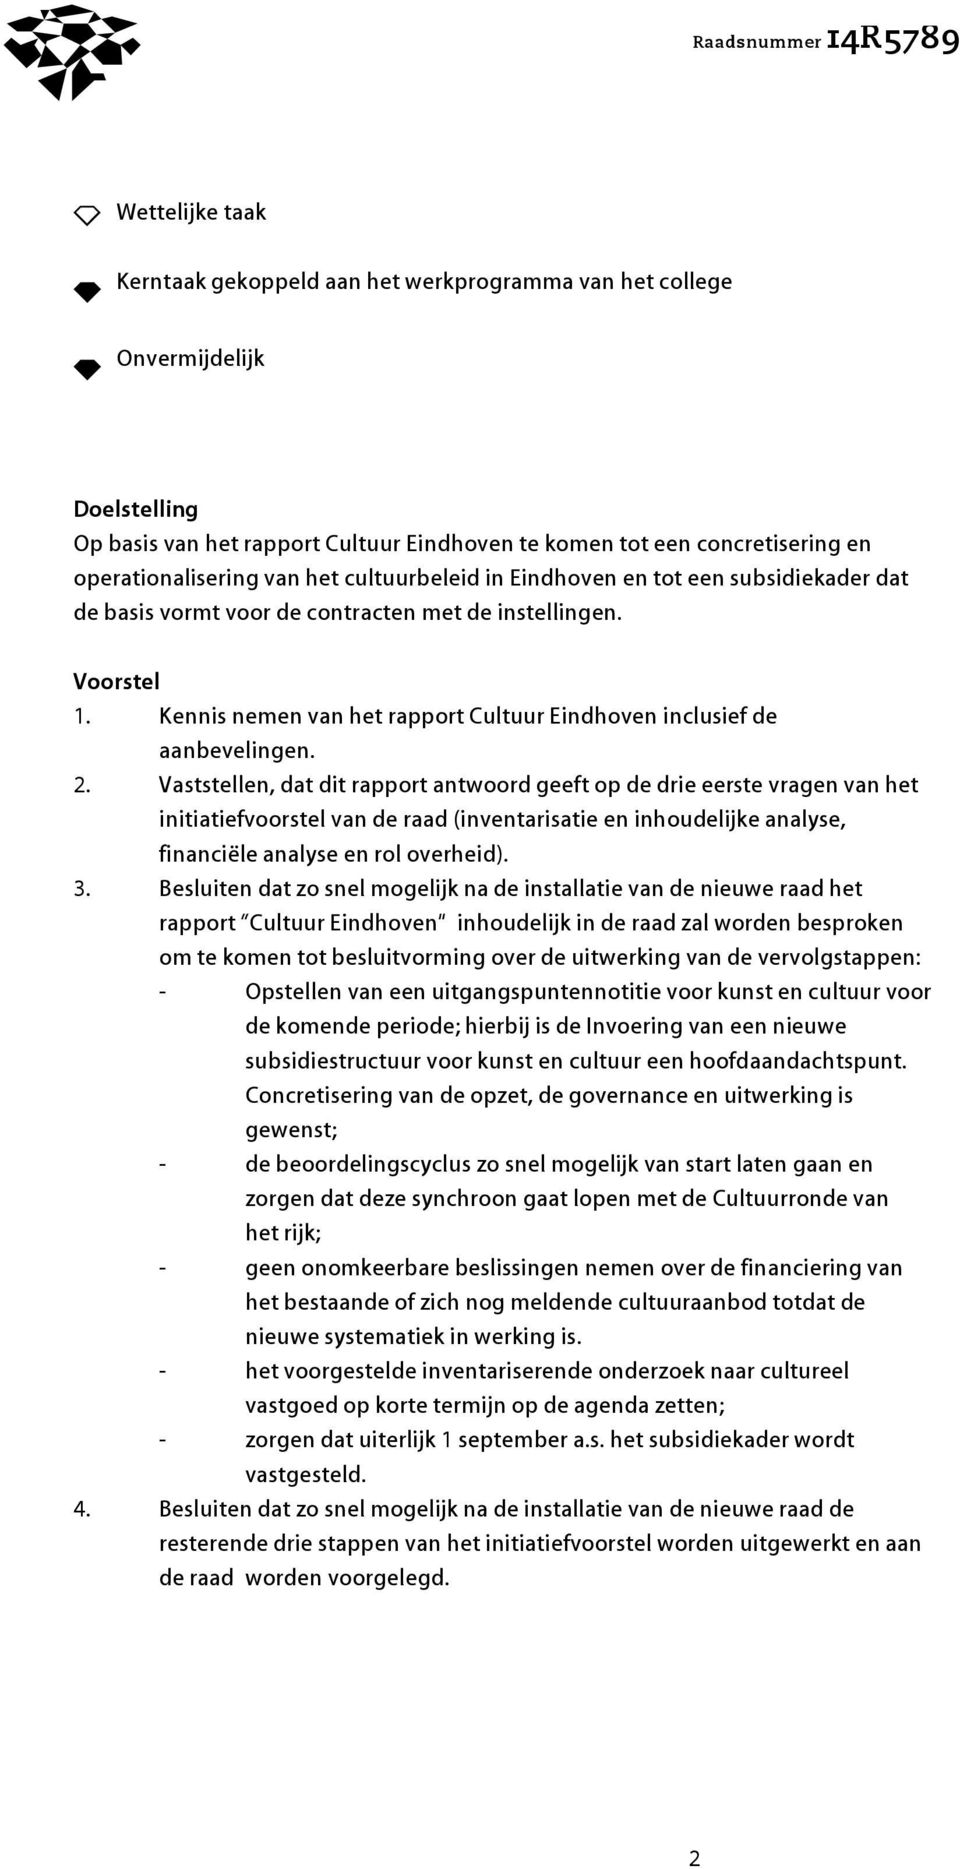 Kennis nemen van het rapport Cultuur Eindhoven inclusief de aanbevelingen. 2.